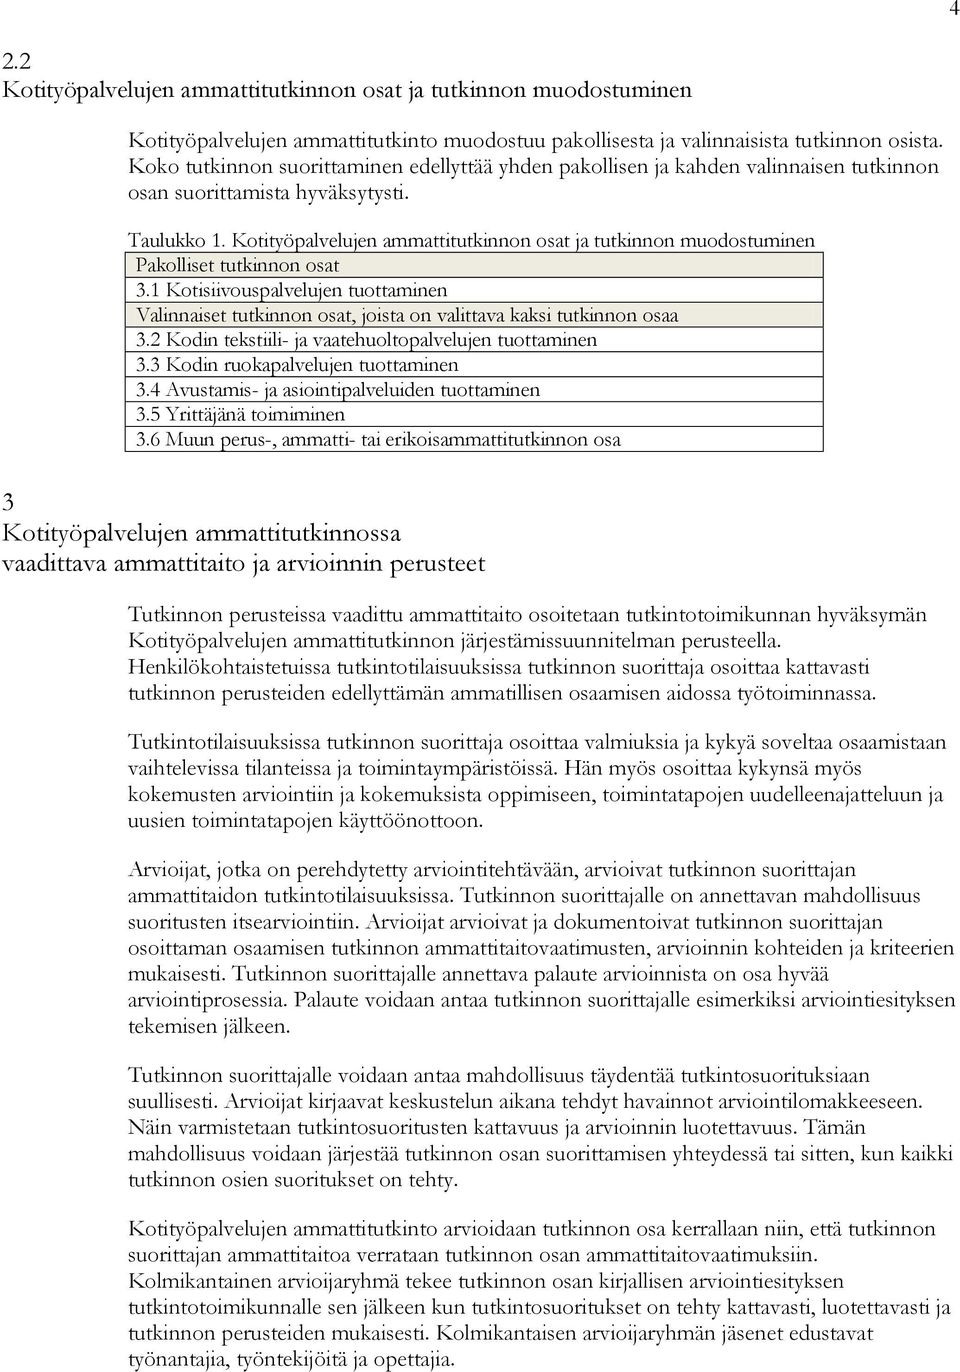 Kotityöpalvelujen ammattitutkinnon osat ja tutkinnon muodostuminen Pakolliset tutkinnon osat 3.